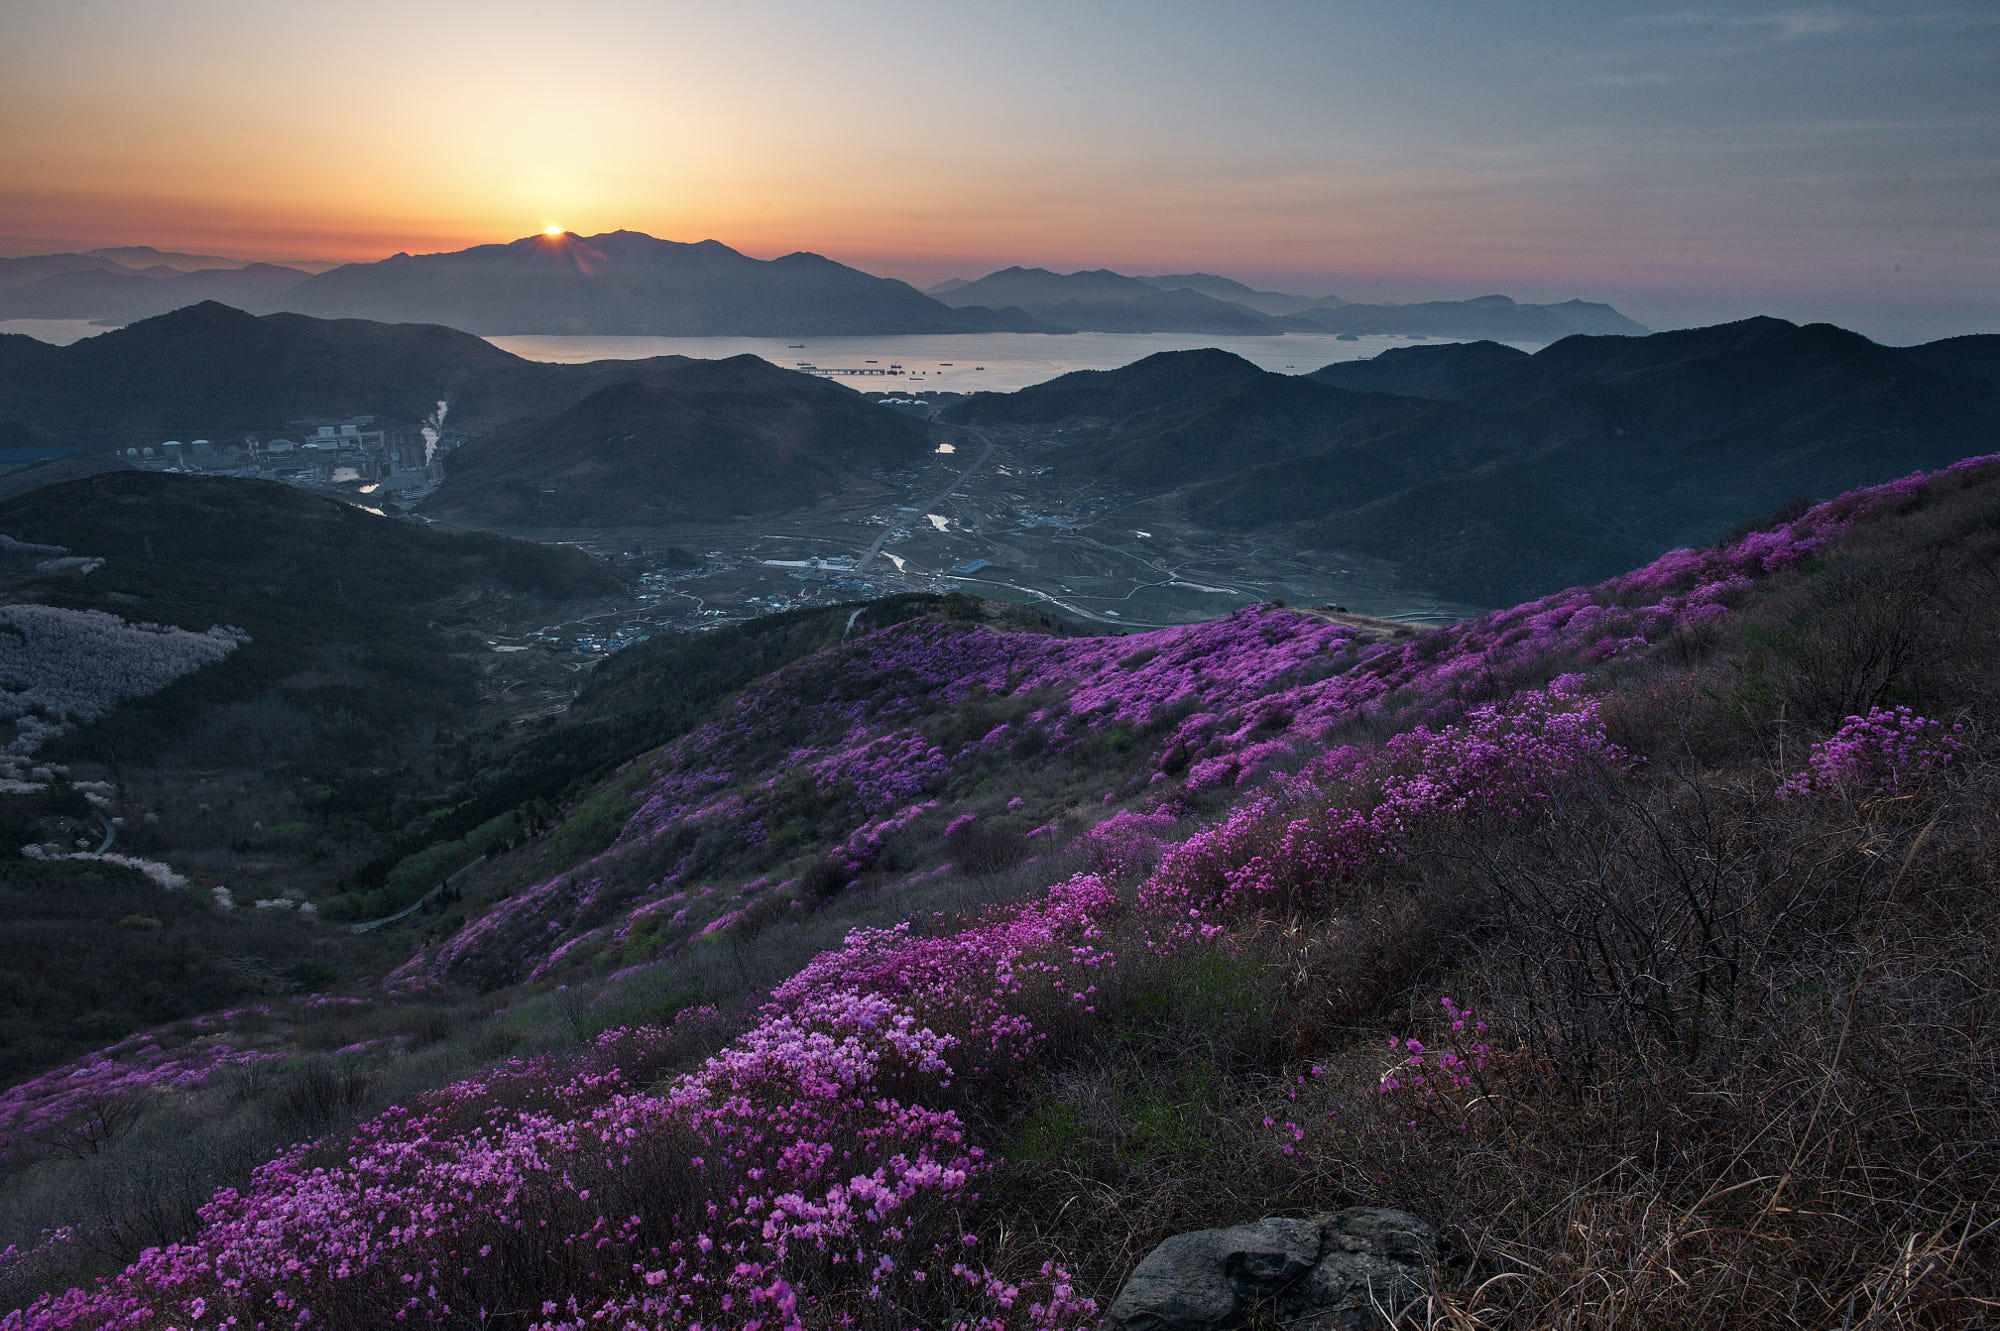 The sunrise of azalea hills.